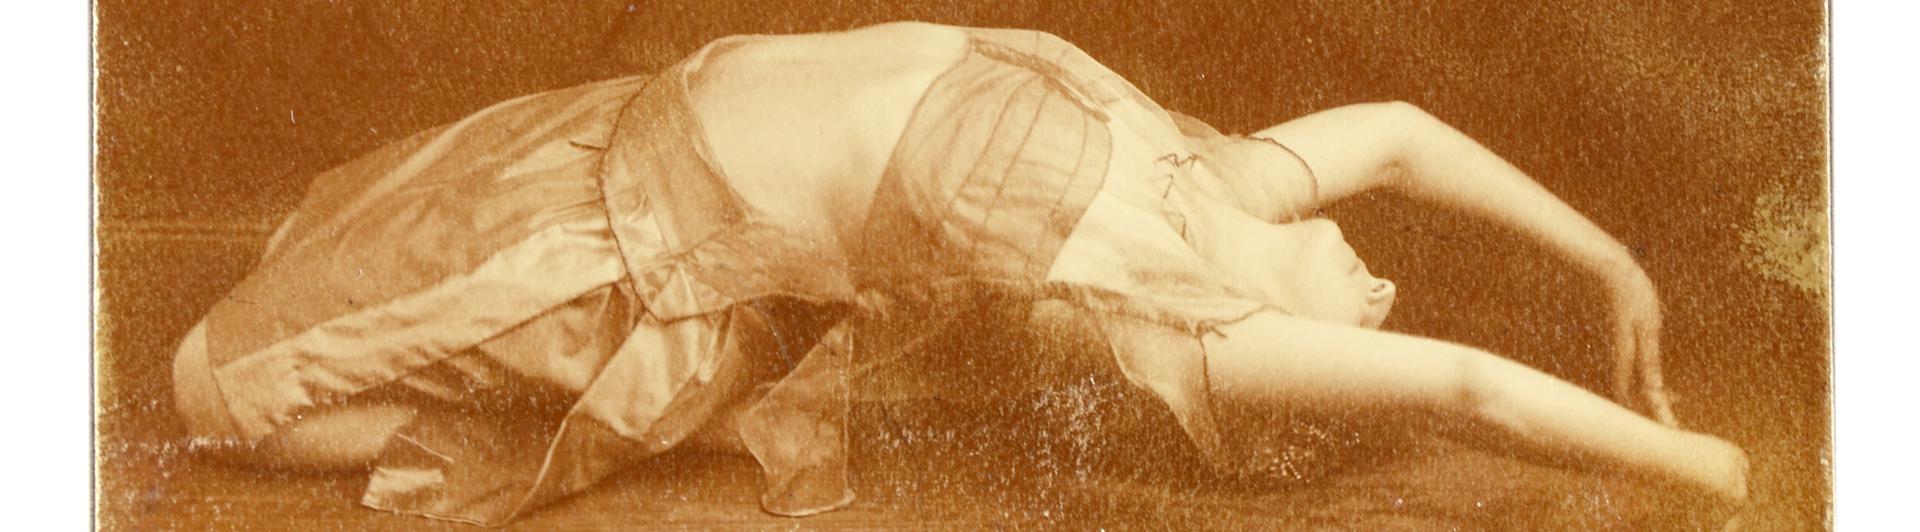 Alte Fotografie einer Frau in liegender Tanzpose